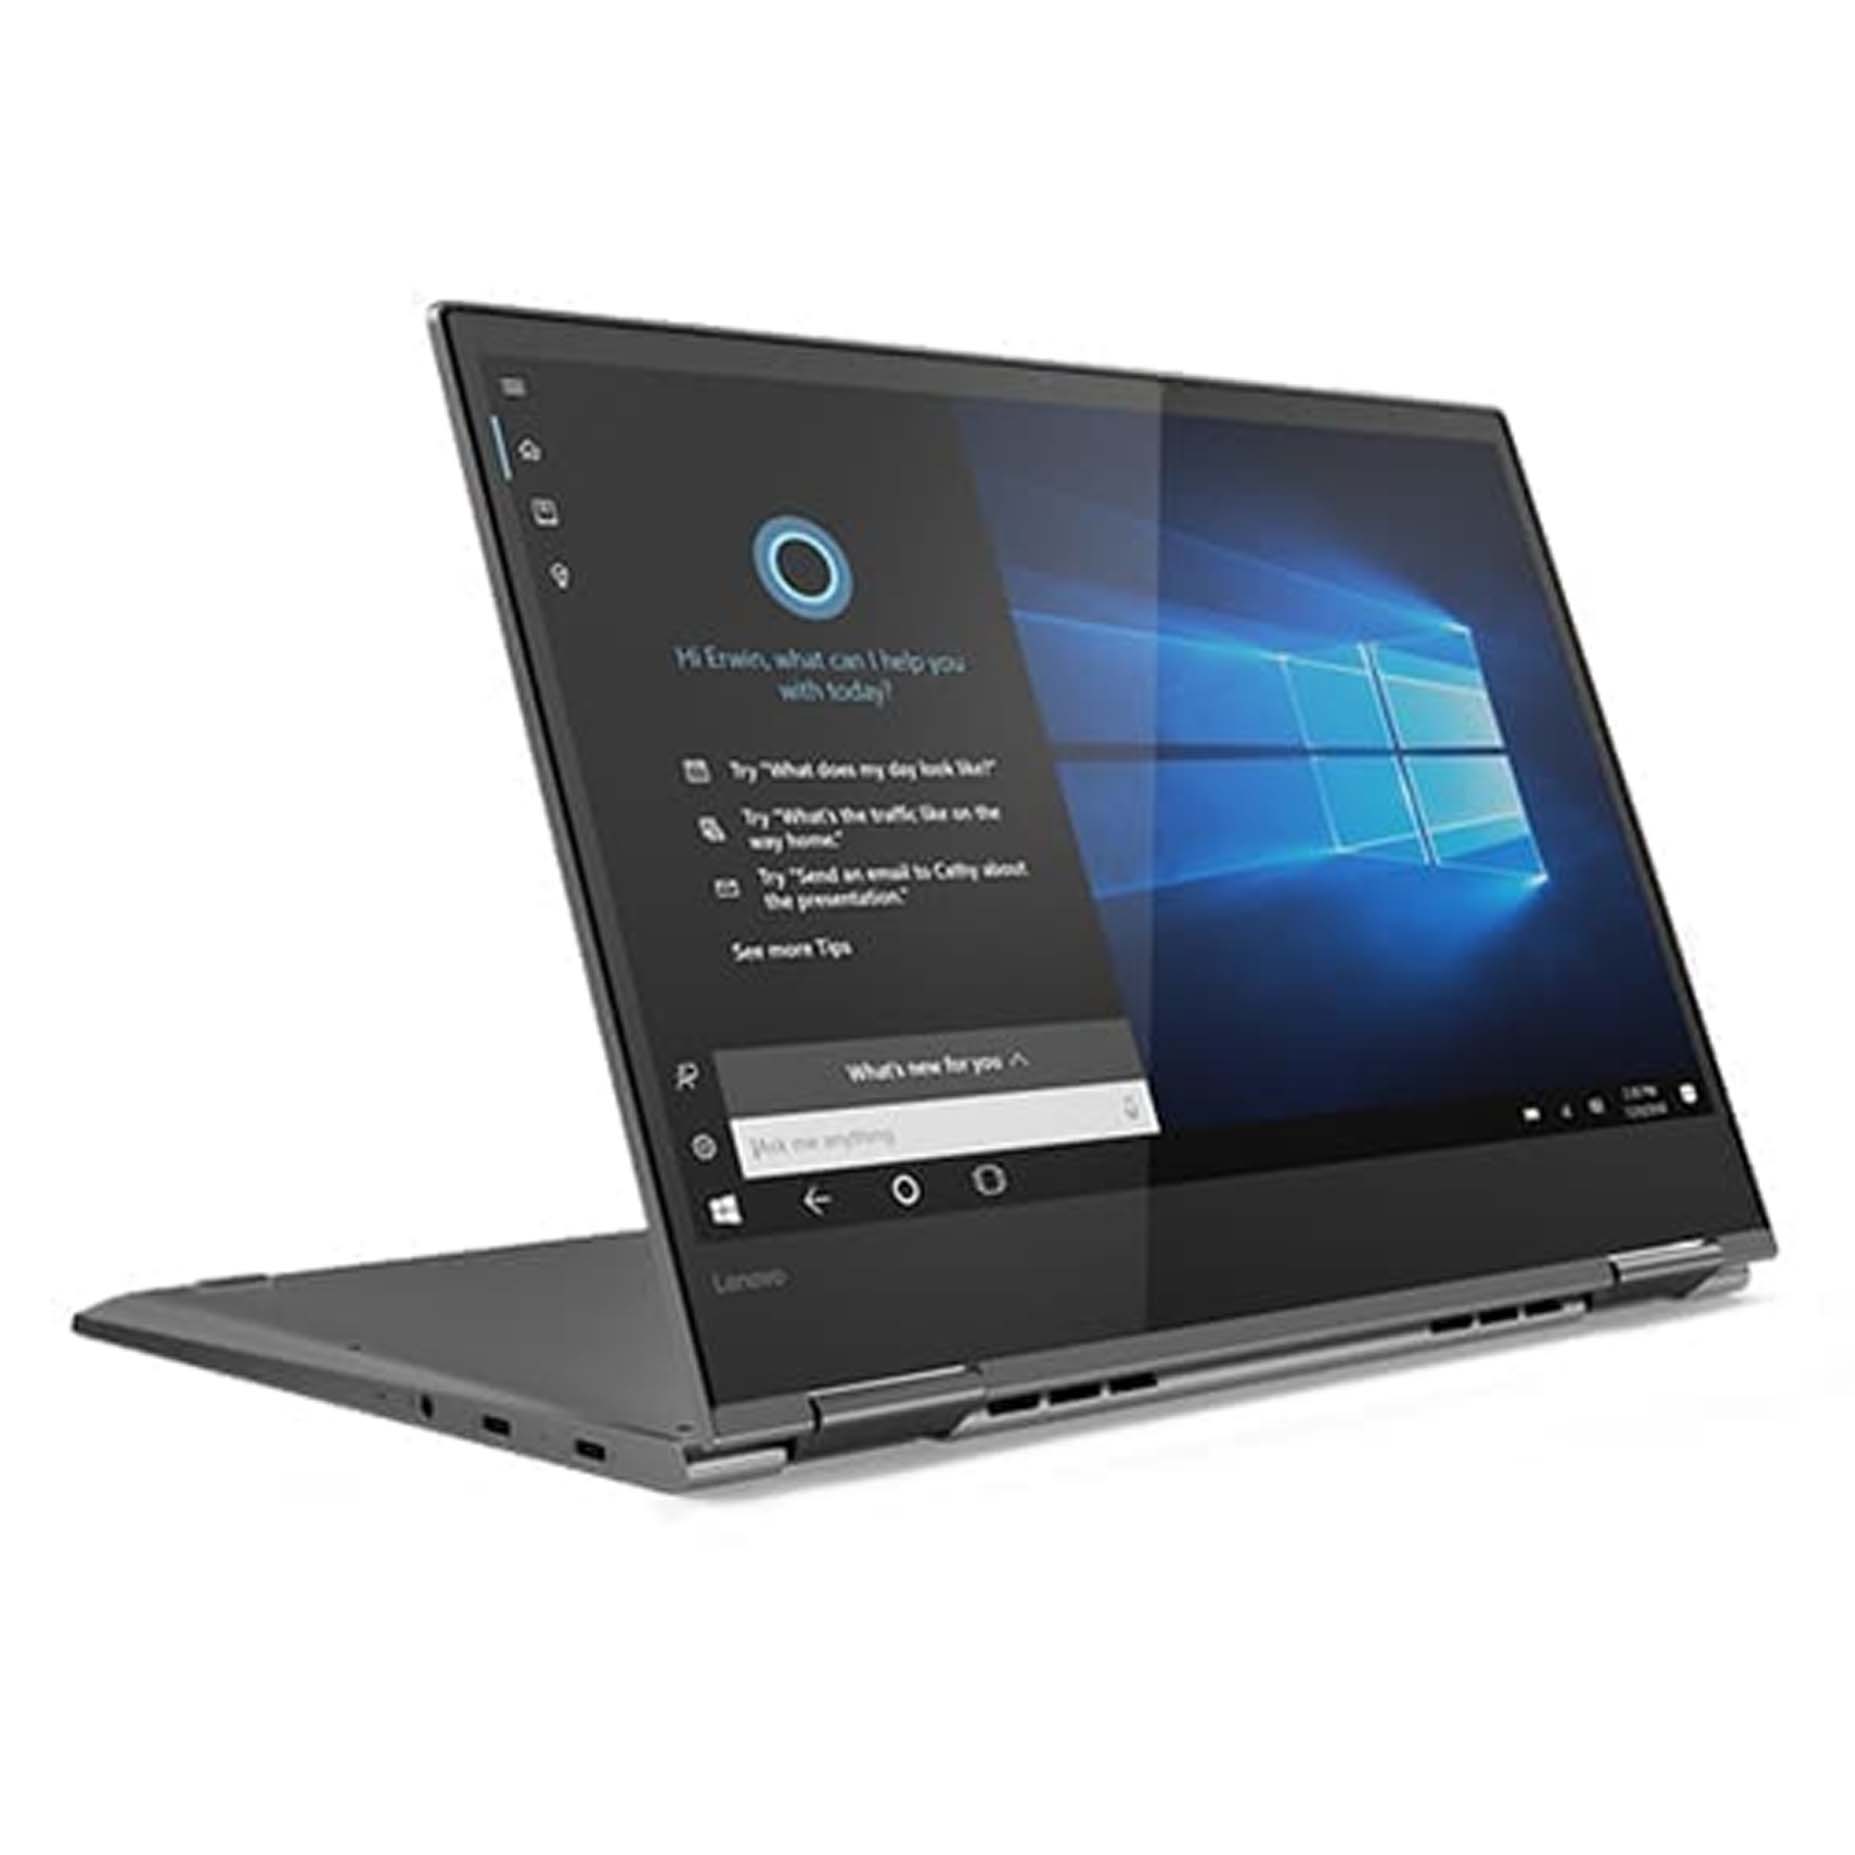 Harga Lenovo Yoga 520-14IKB LAID Laptop i7-8250 8GB 1TB+128GB GMX130 2GB Win10 14 Inch Black